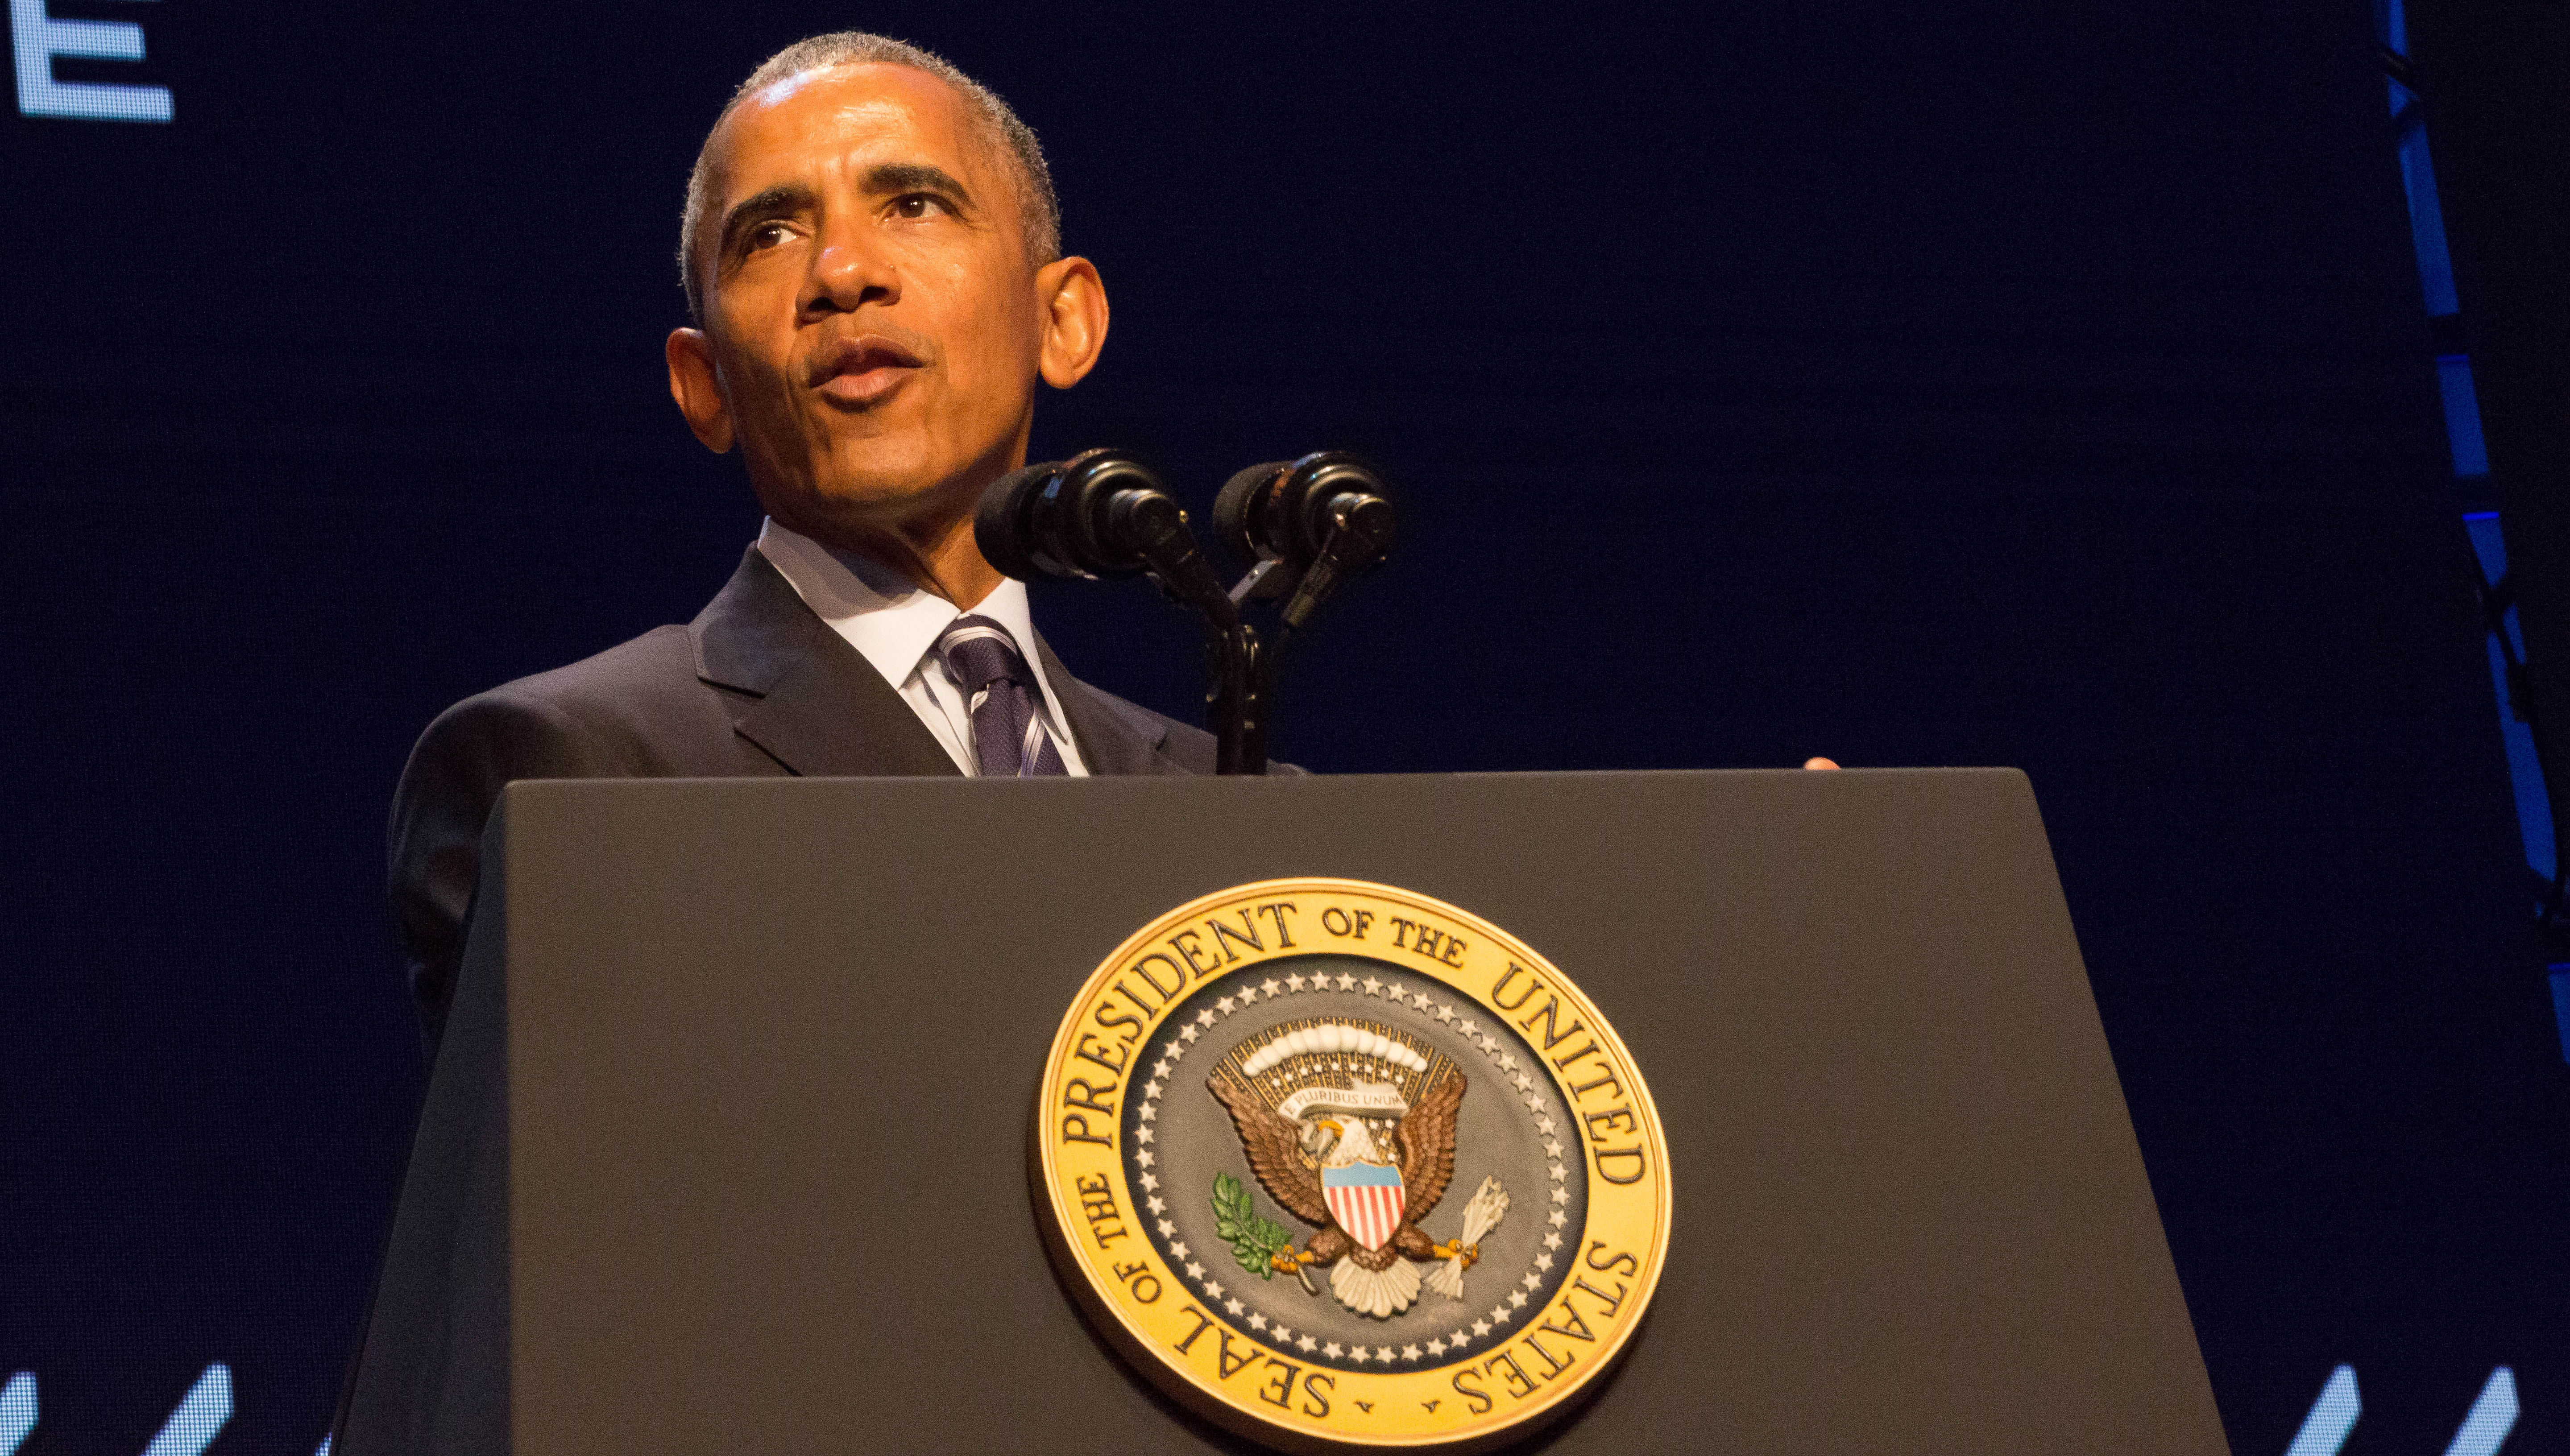 President Barack Obama speaking at Carnegie Mellon University